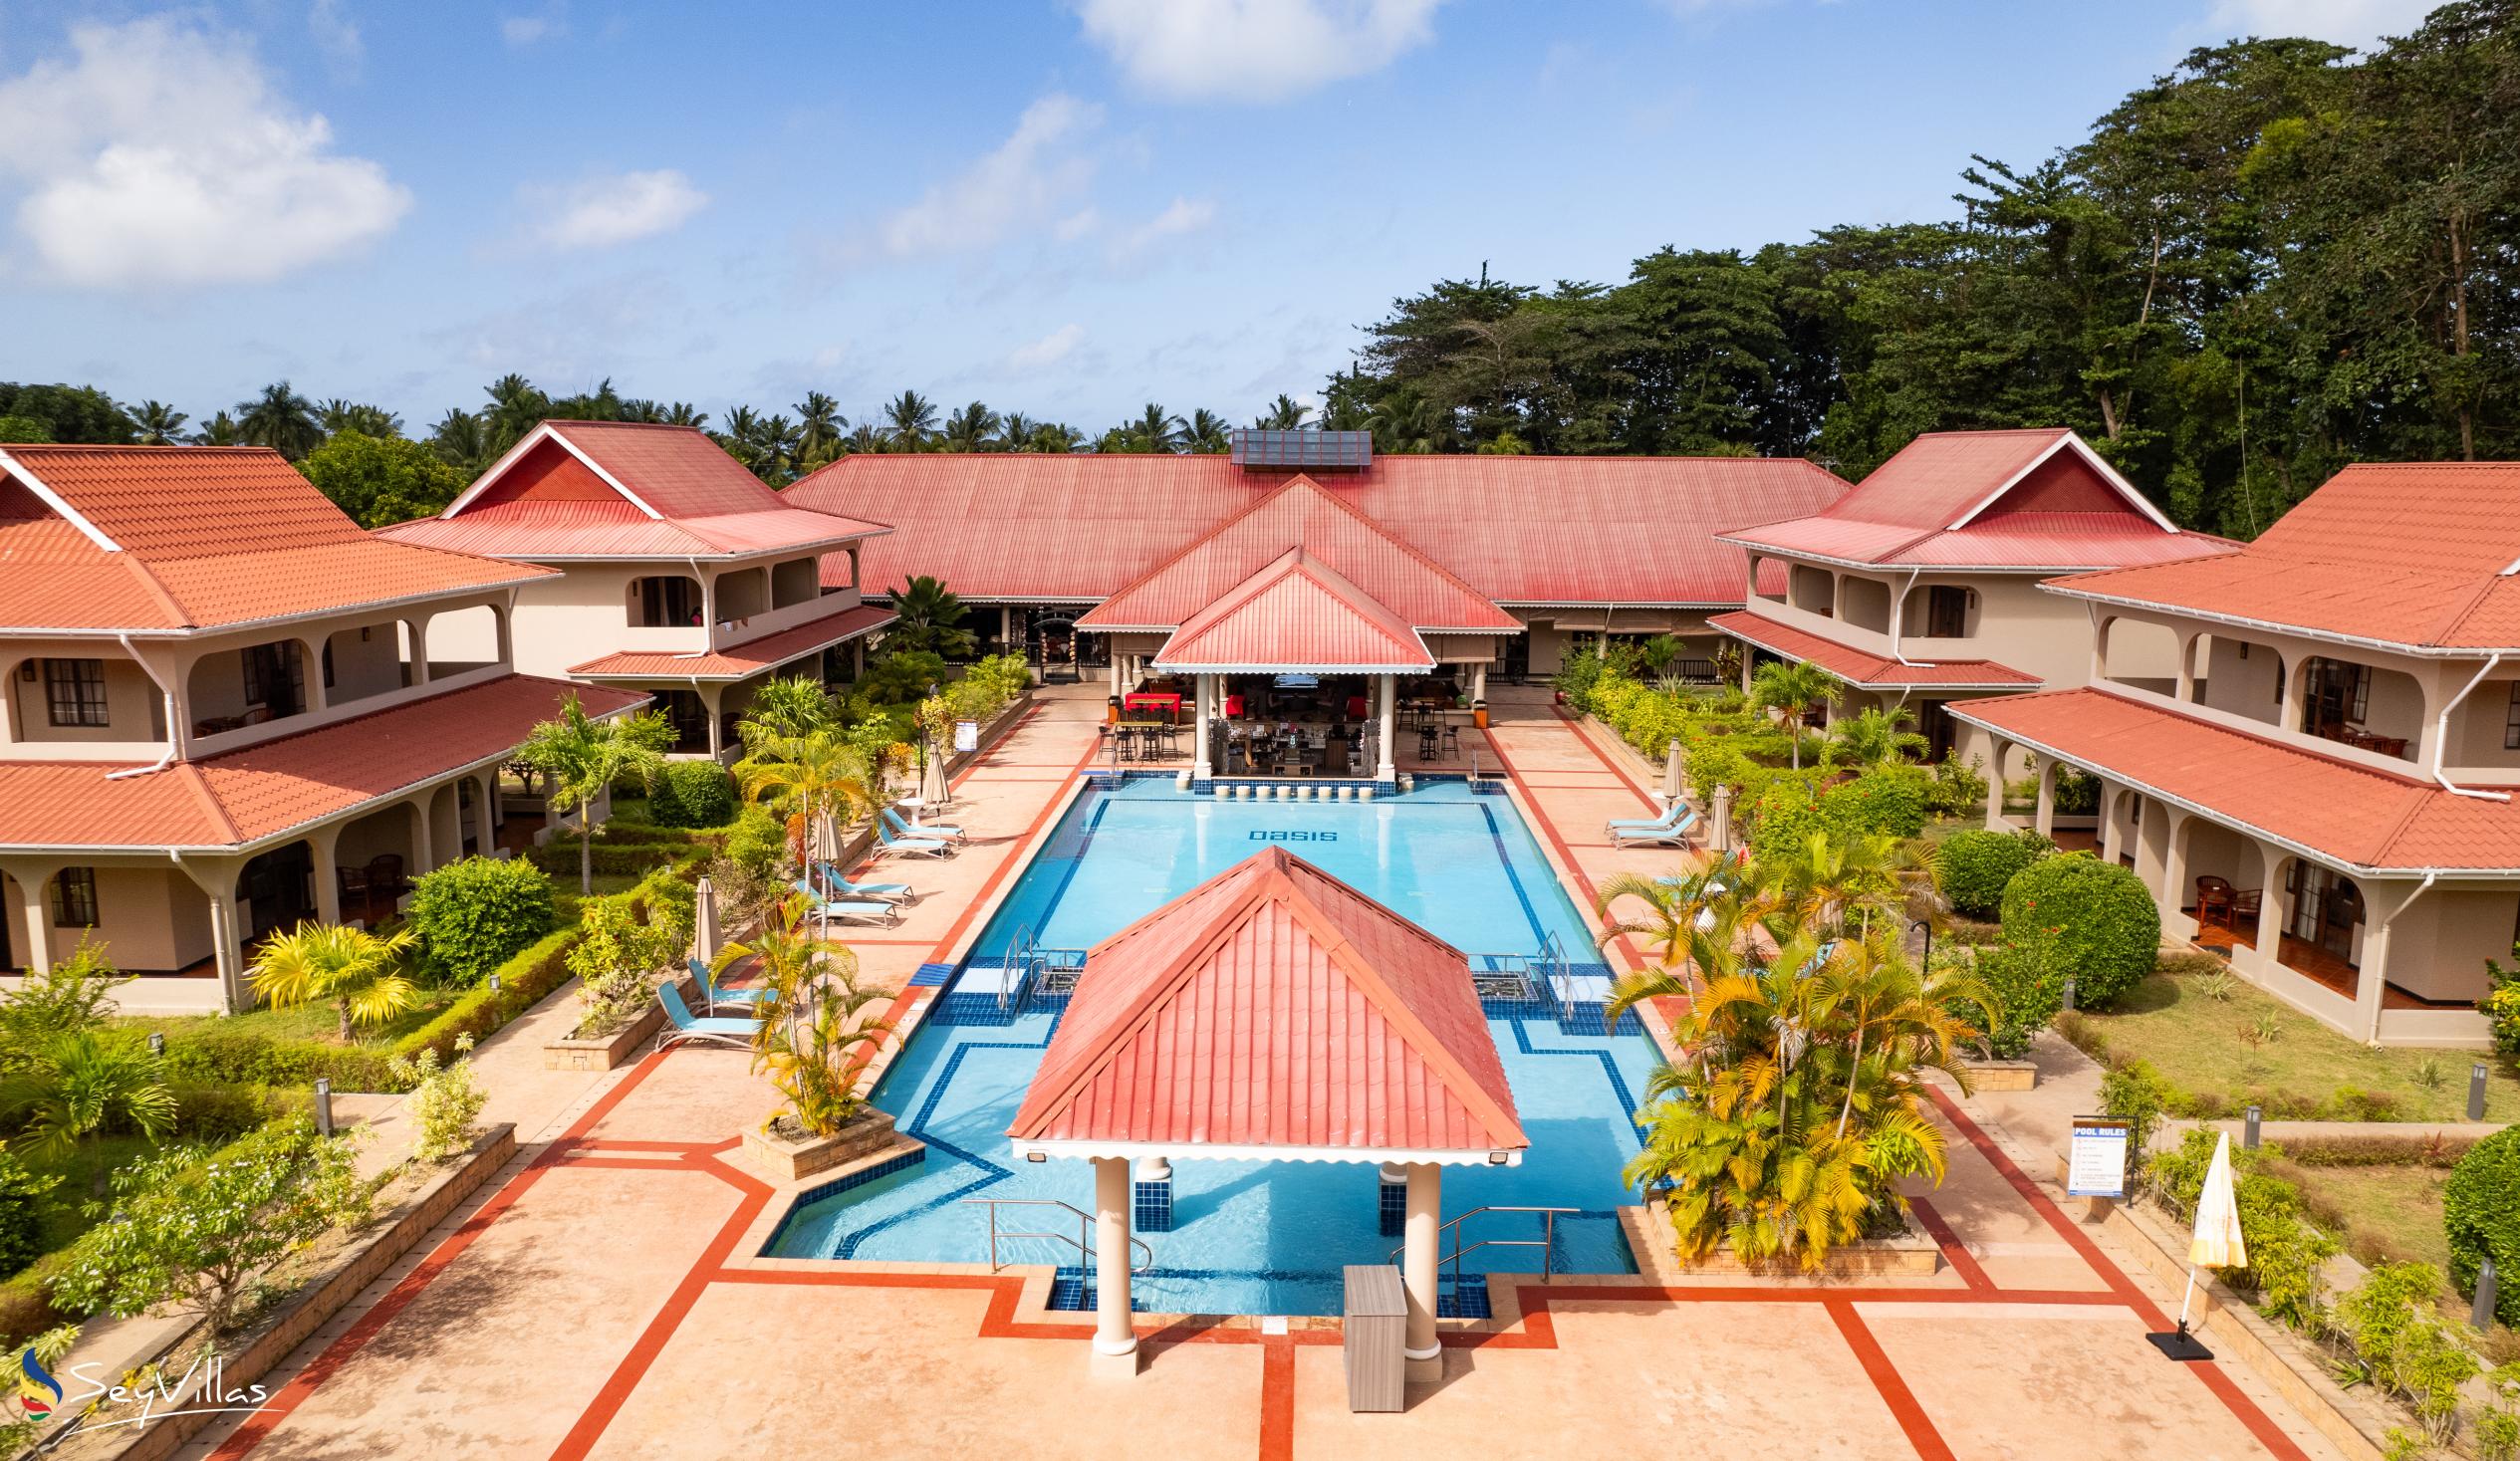 Foto 7: Oasis Hotel, Restaurant & Spa - Aussenbereich - Praslin (Seychellen)